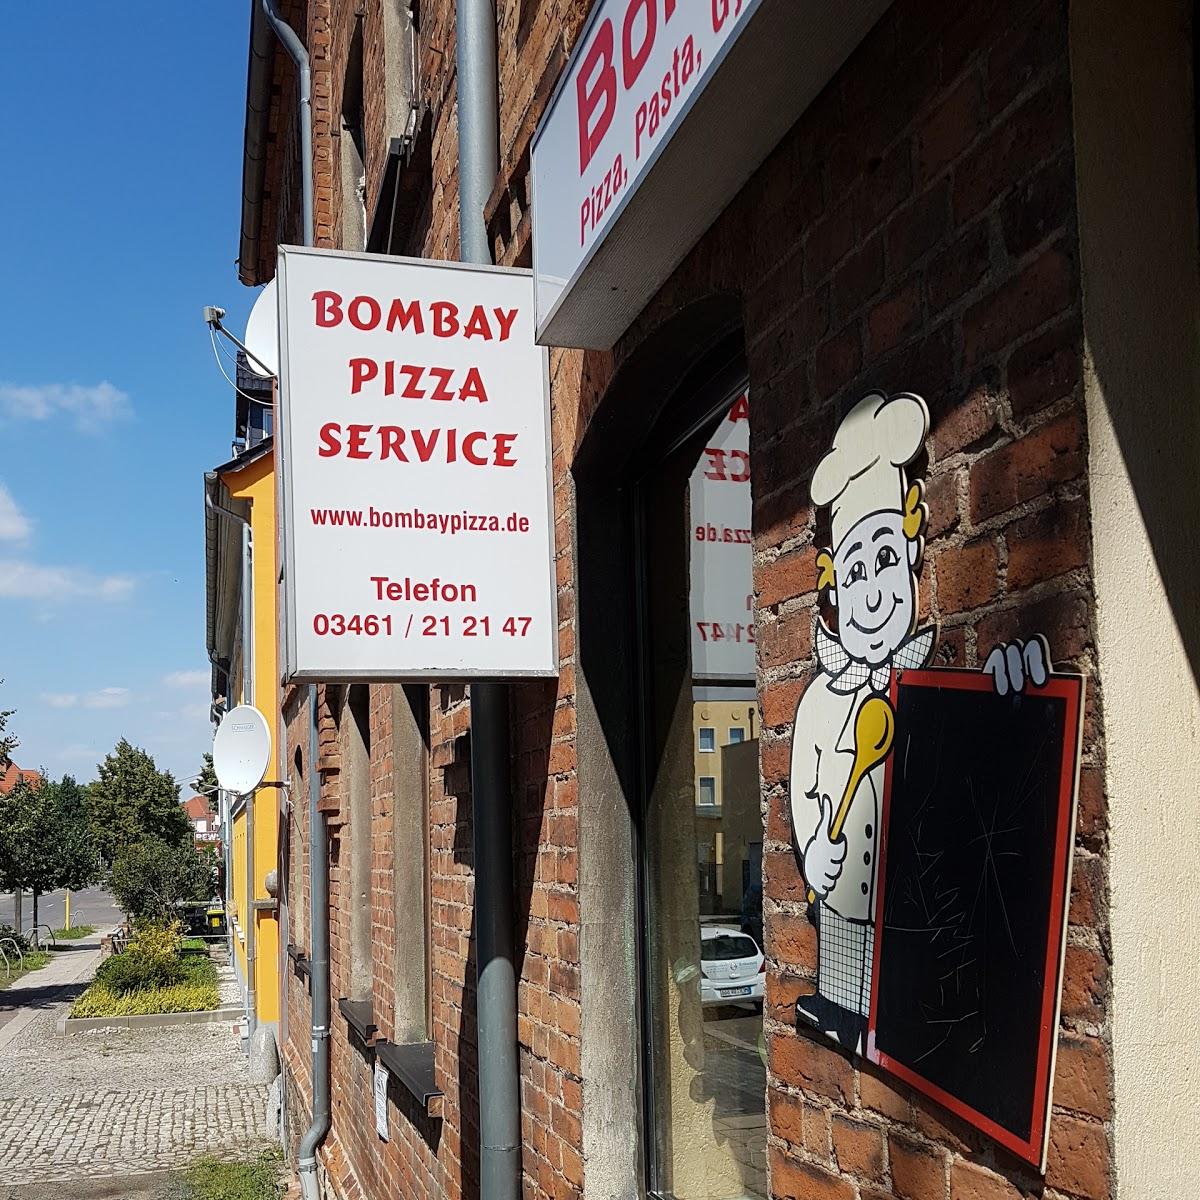 Restaurant "Bombay Pizza Service" in Merseburg